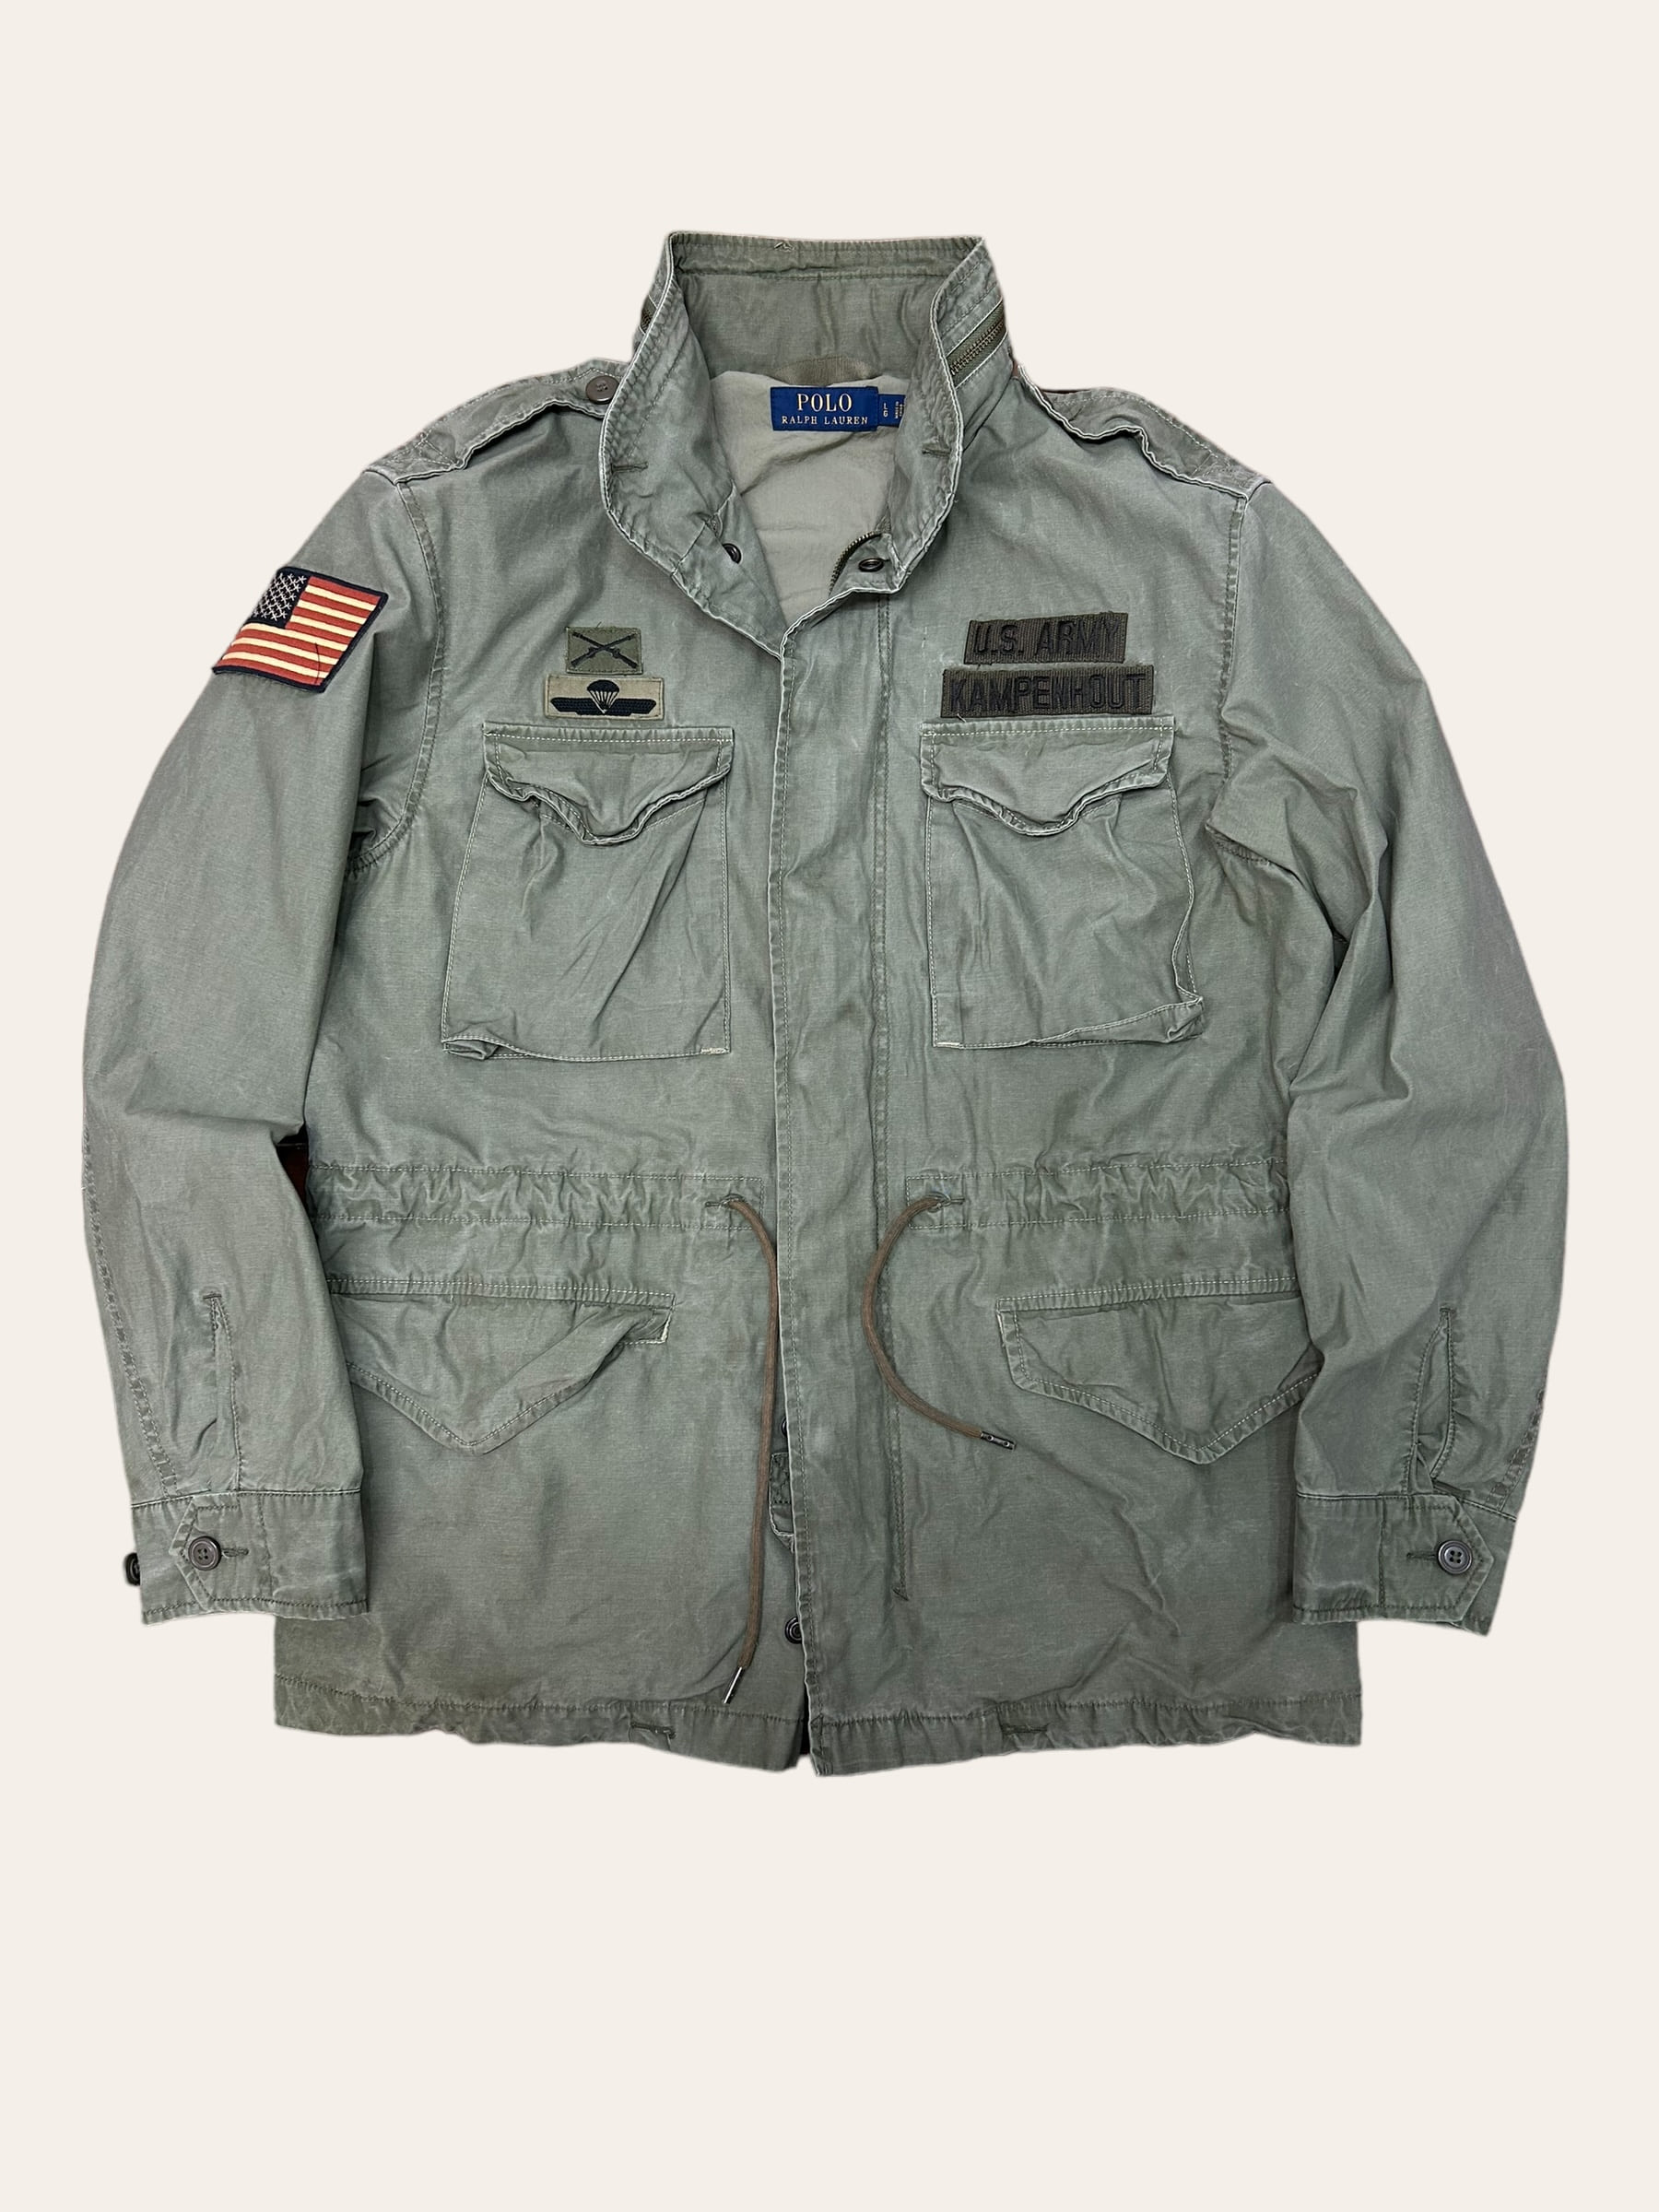 Polo ralph lauren khaki color military M-65 field jacket L